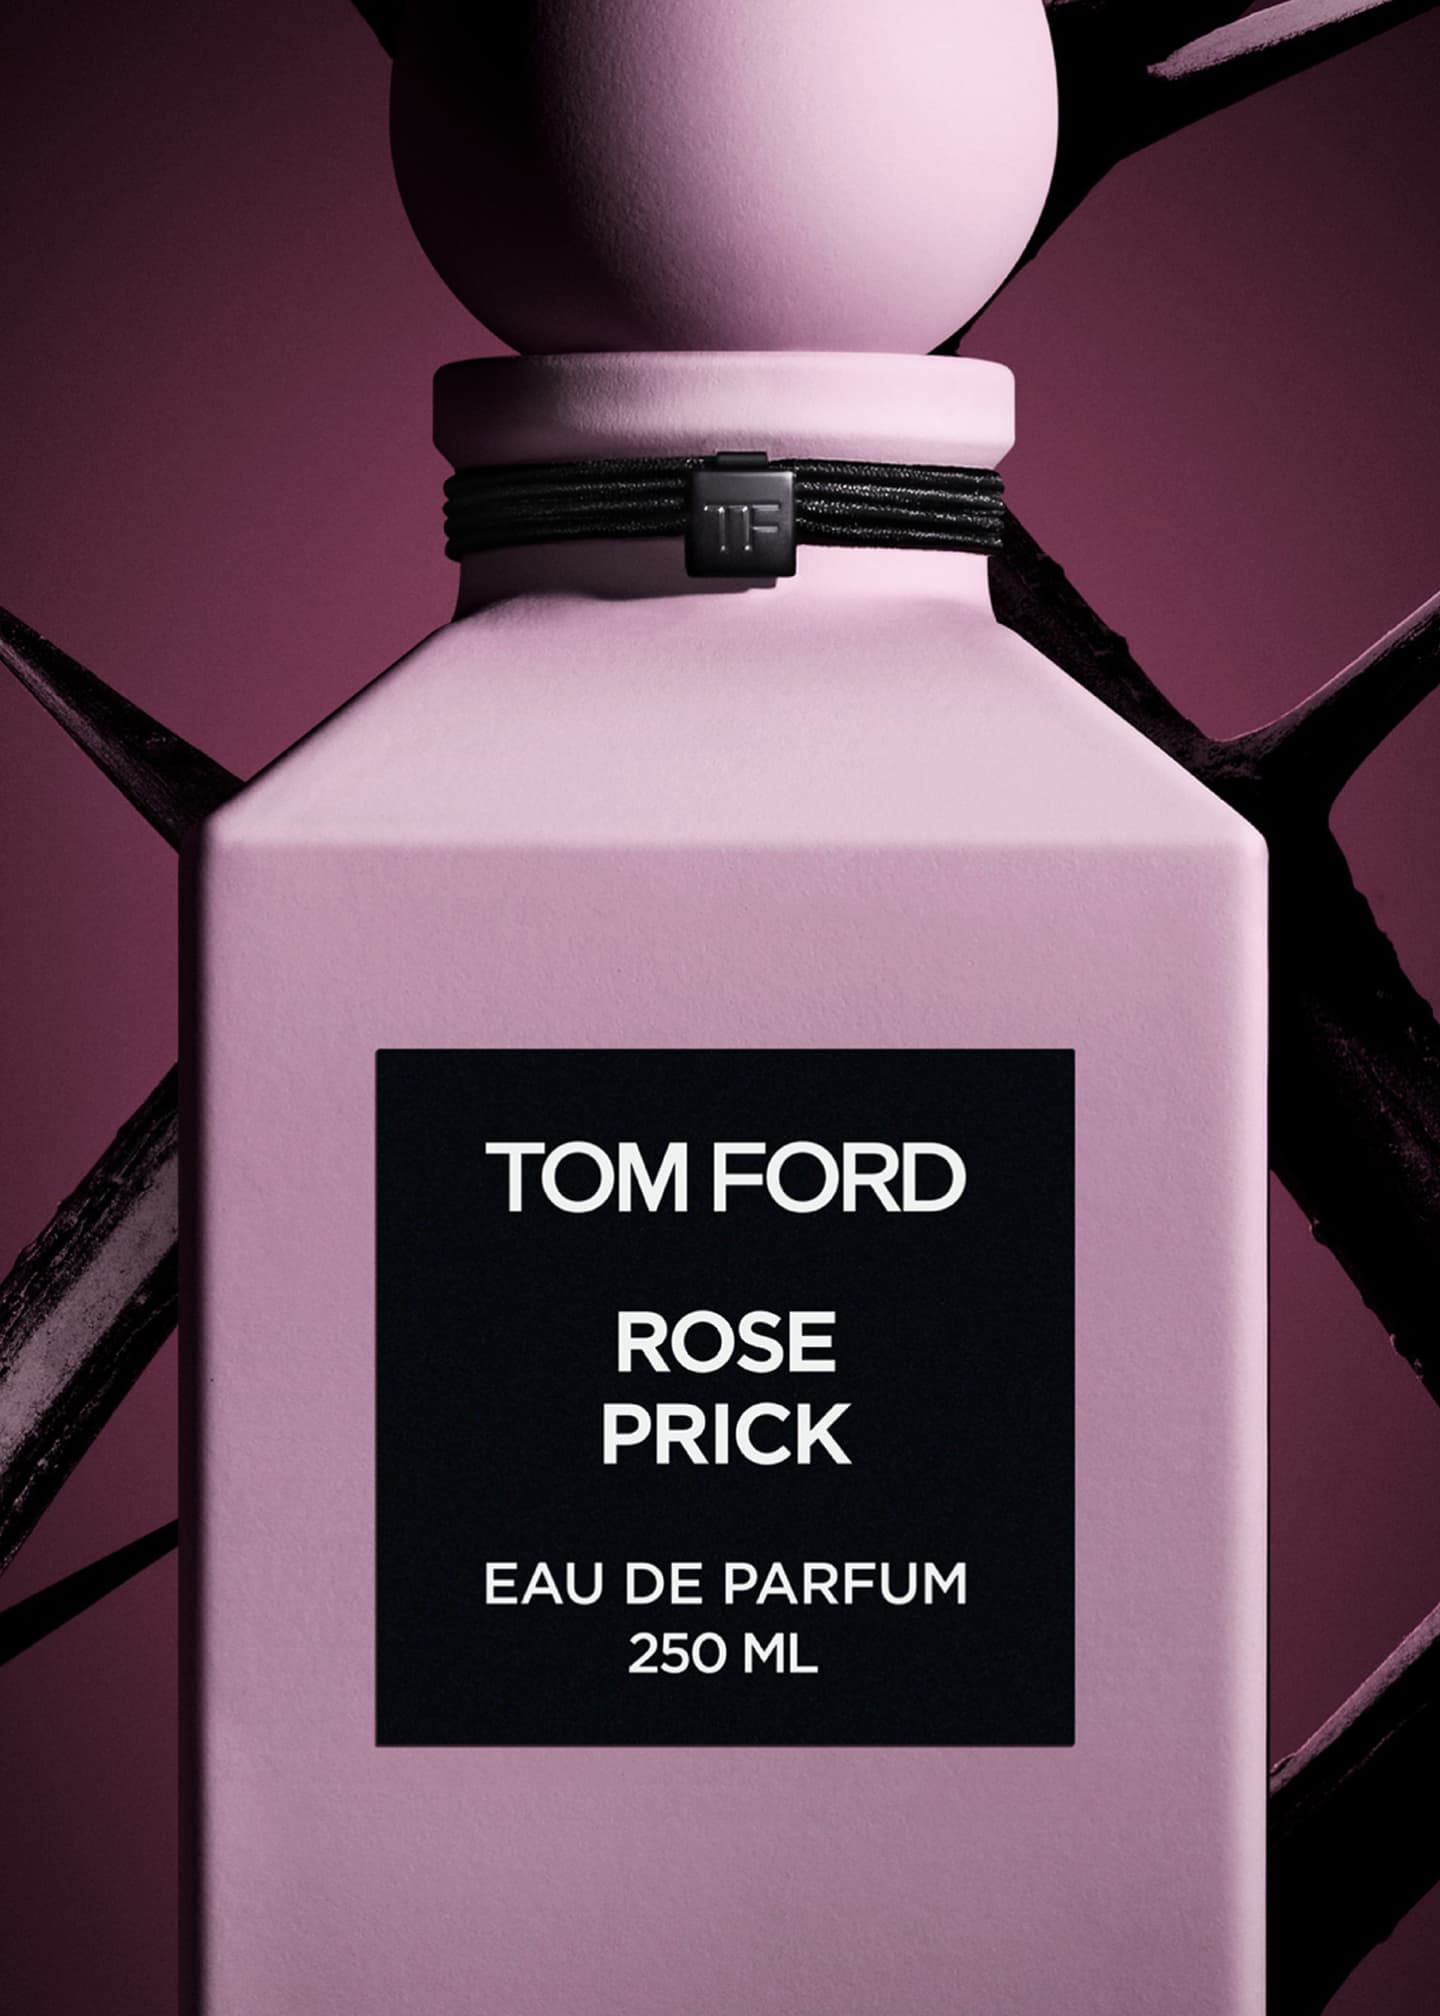 TOM FORD Rose Prick Eau de Parfum Fragrance 250ml Decanter - Bergdorf ...